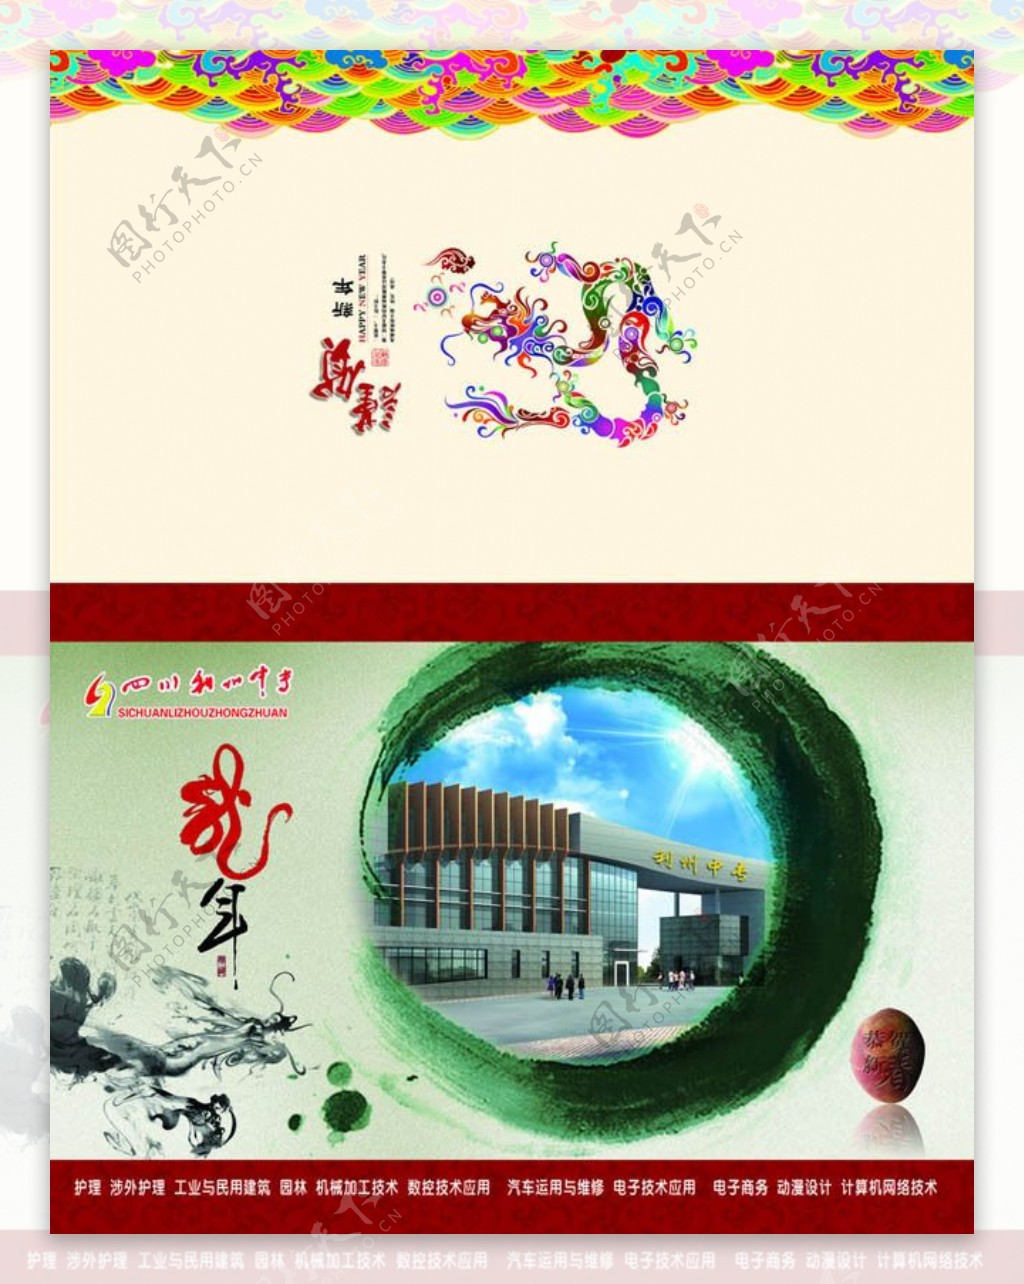 中国风2012新年贺卡设计PSD素材